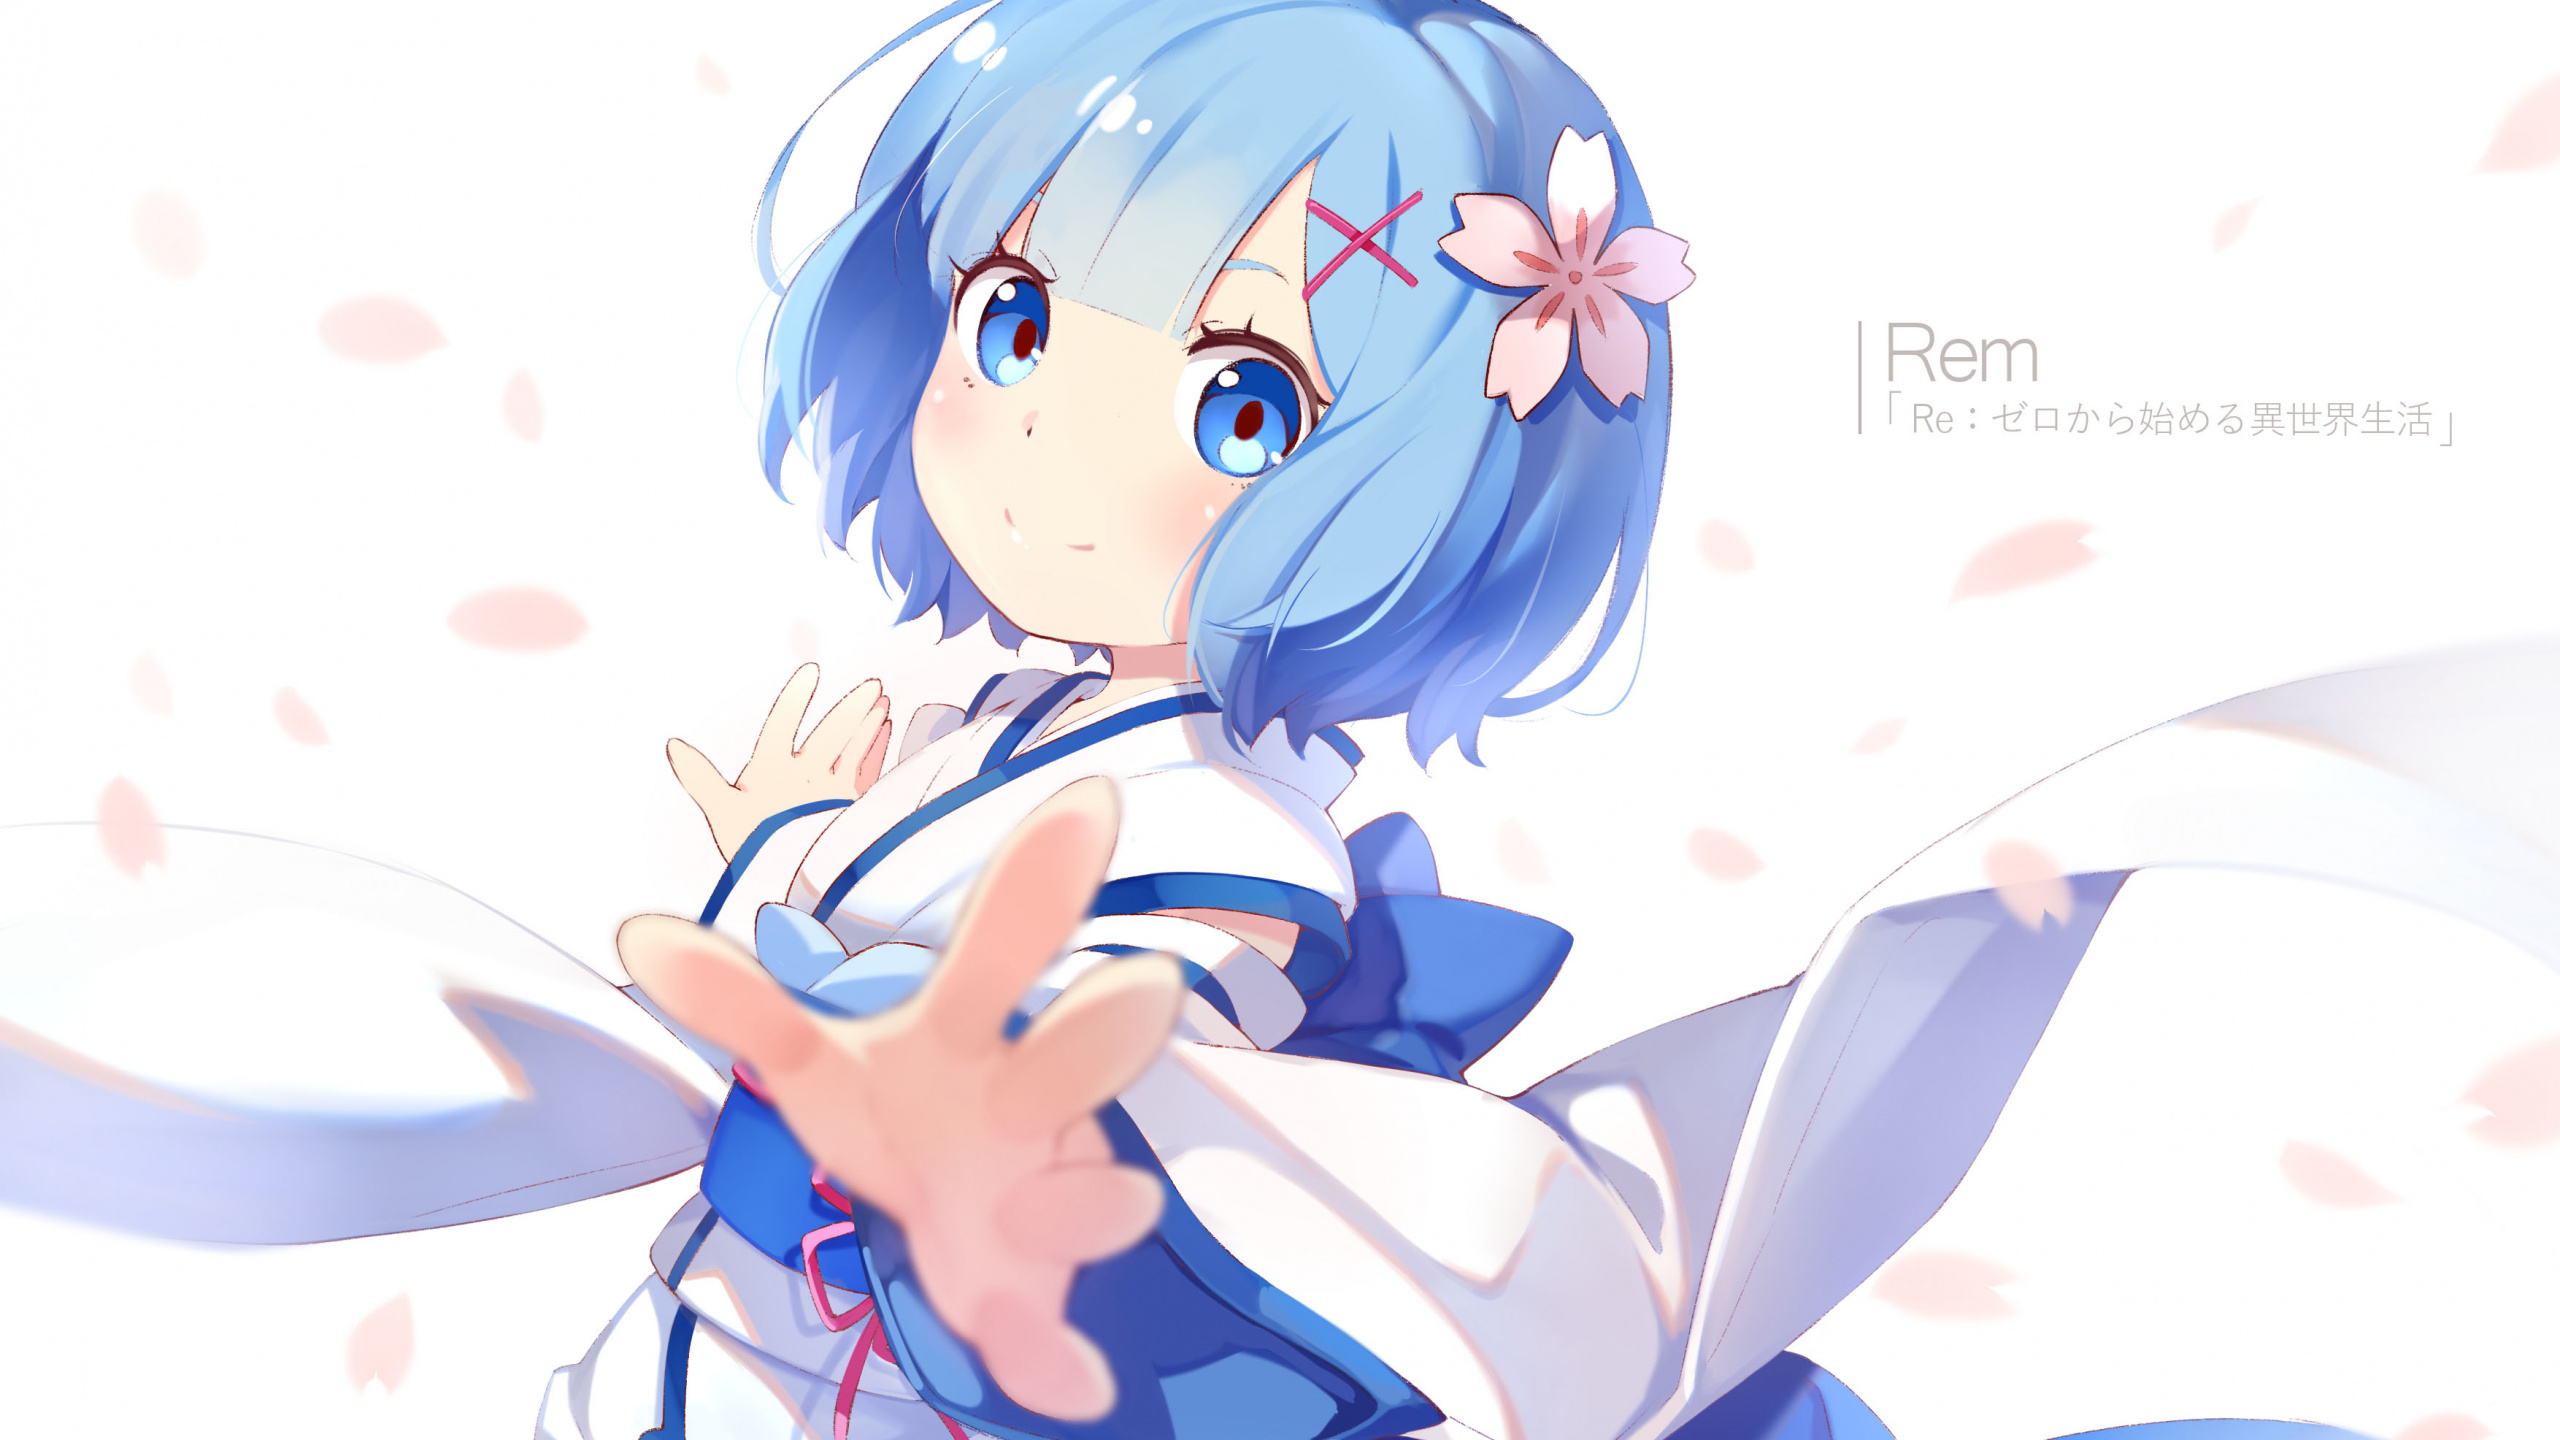 Chica en Vestido Azul Personaje de Anime. Wallpaper in 2560x1440 Resolution